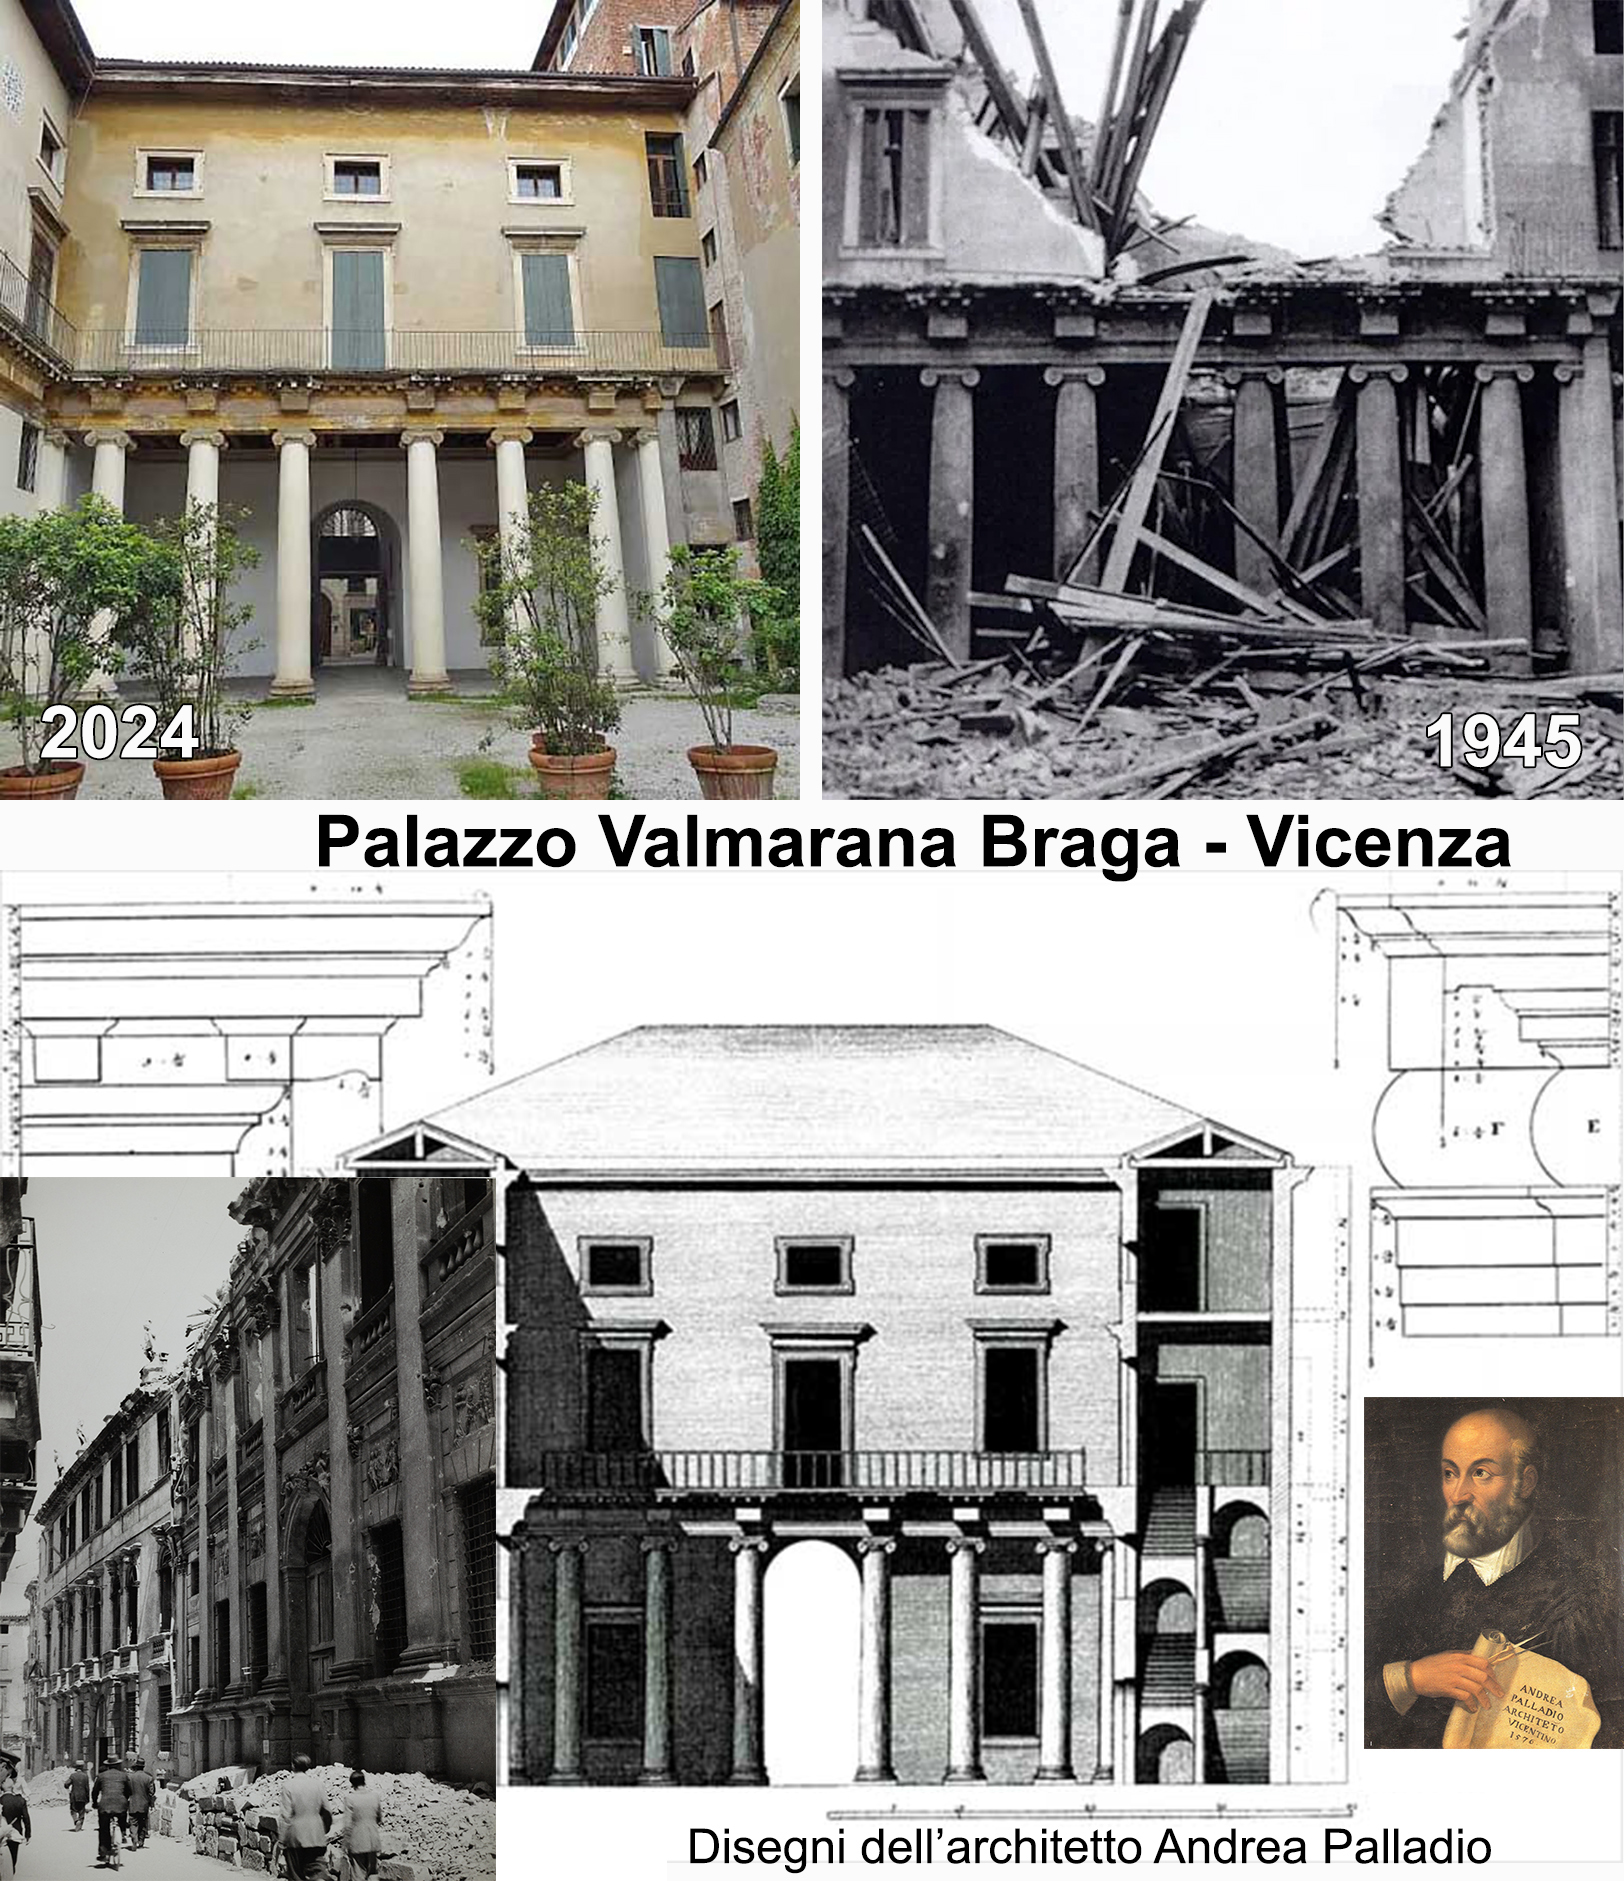 Bombardamenti Alleati: La Tragedia Invisibile del Patrimonio Italiano